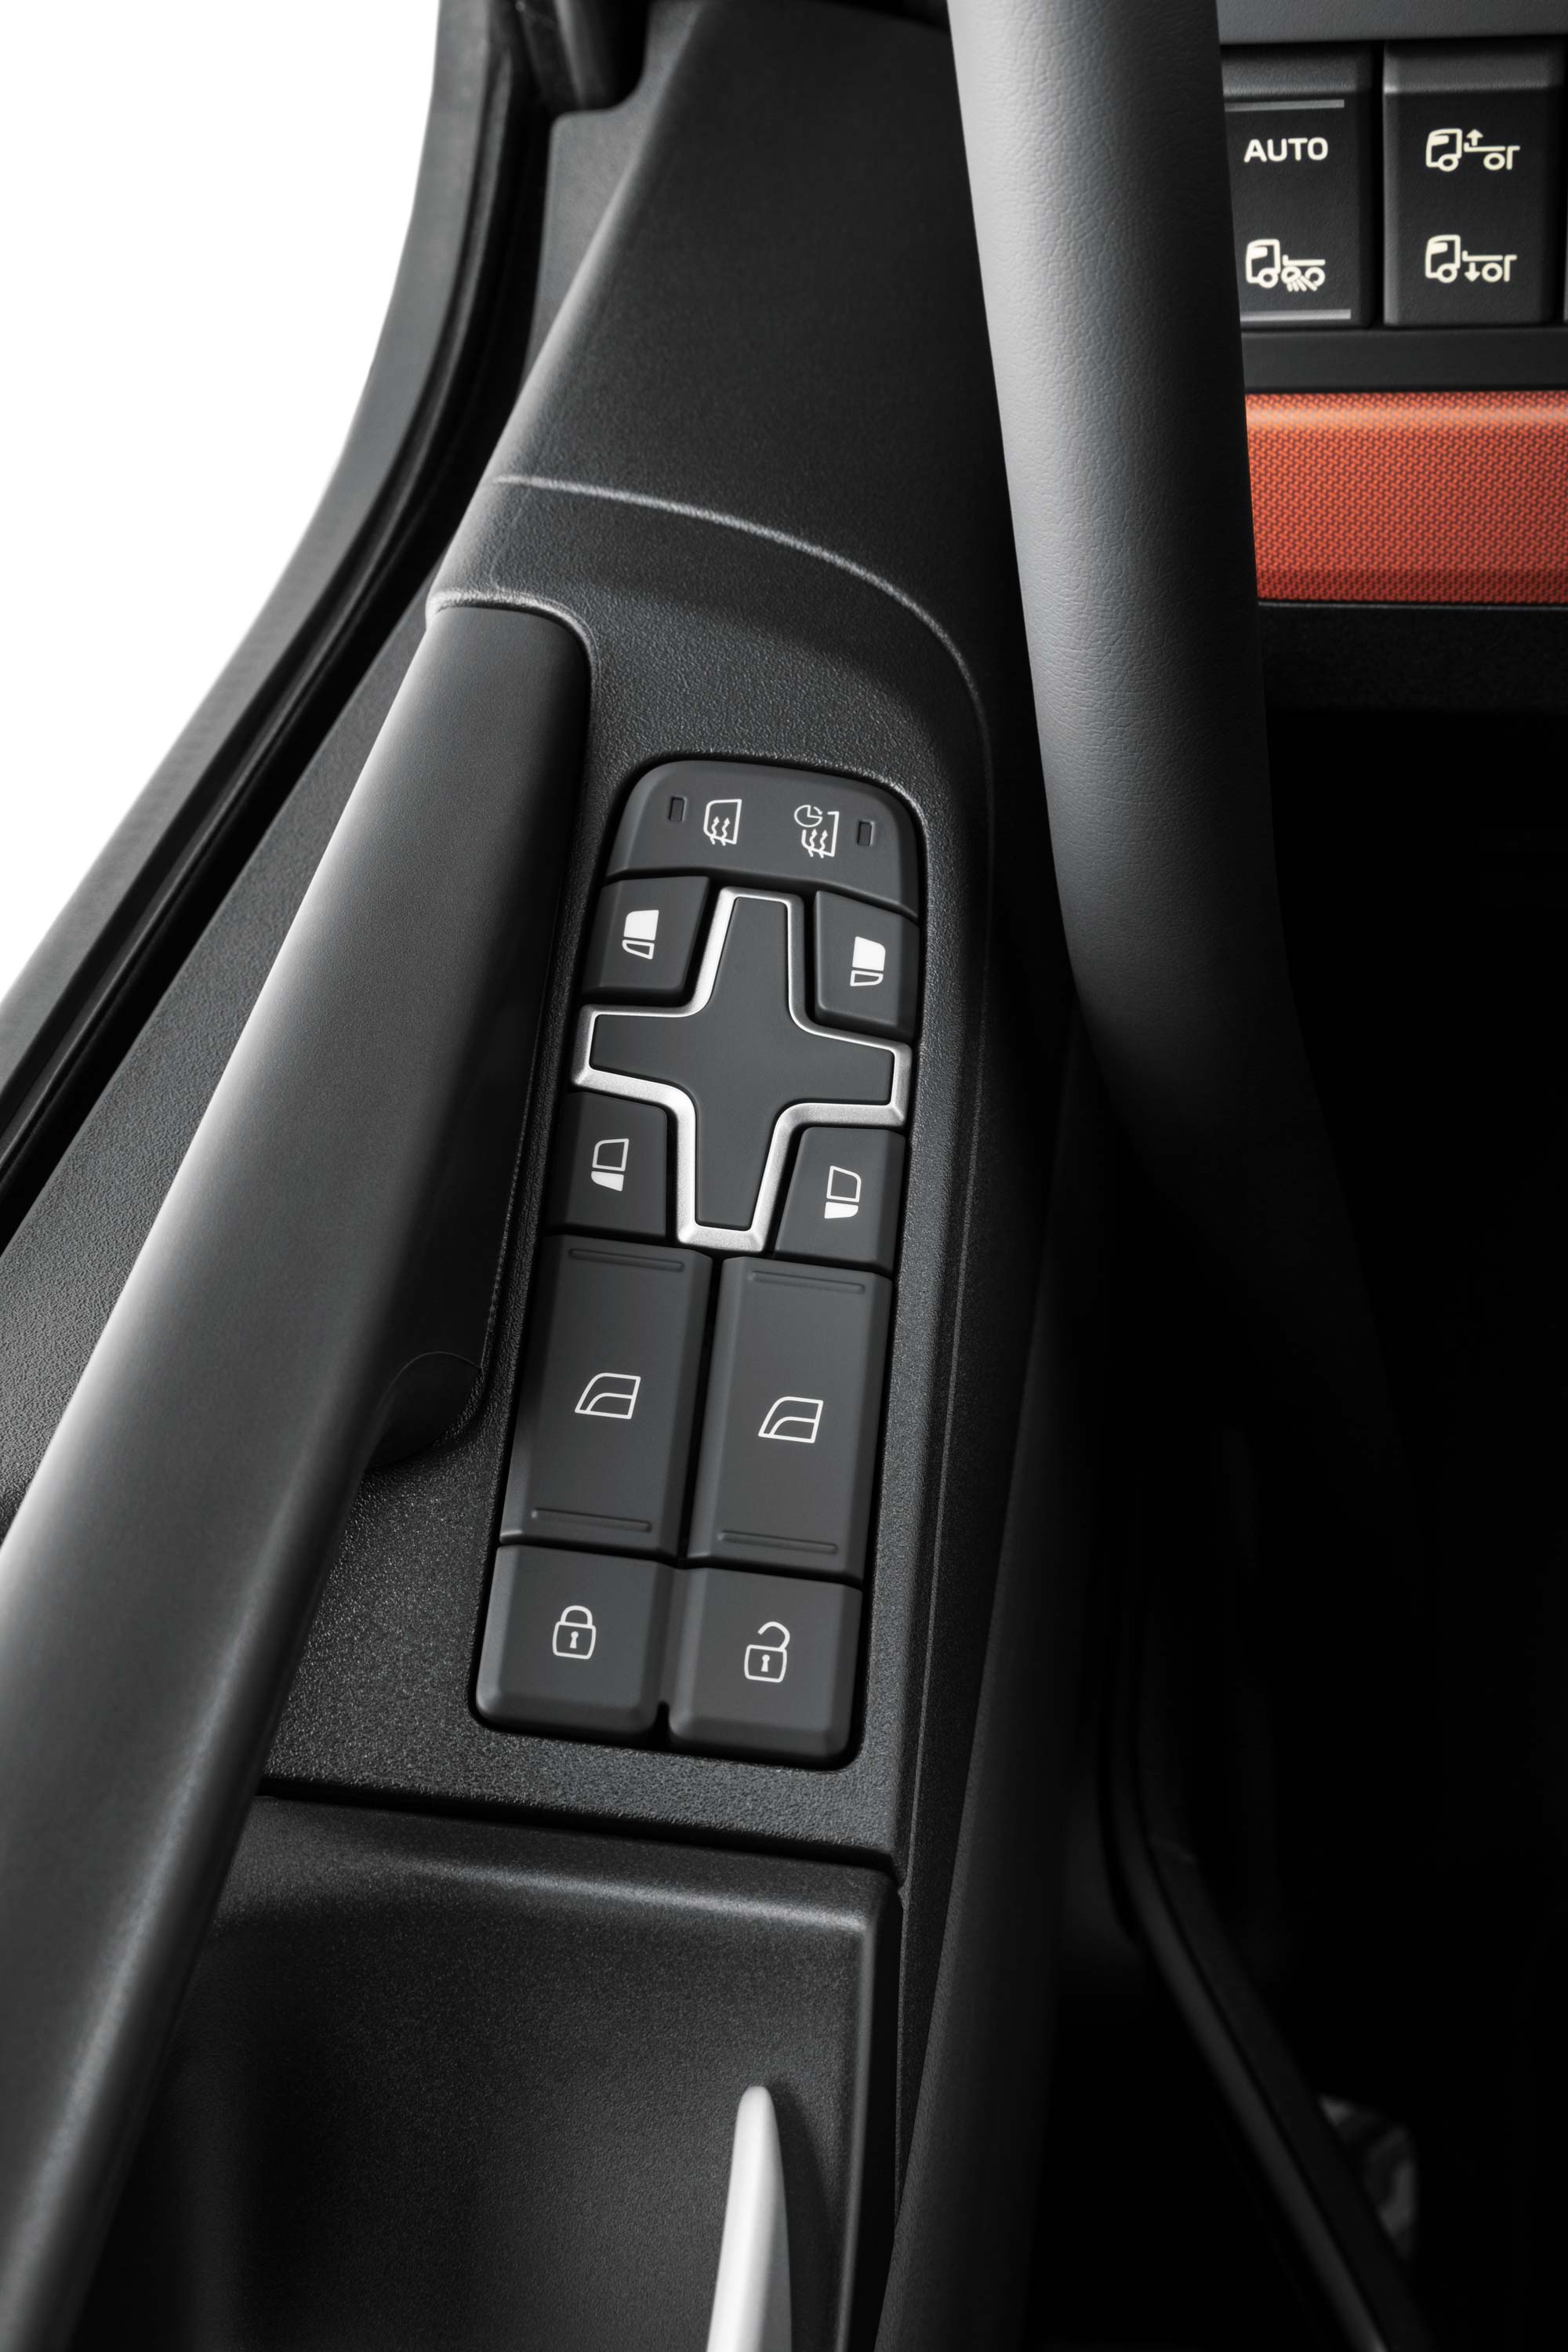 Krmilni elementi so vgrajeni v kabino vozila Volvo FH16 za lažji dostop.